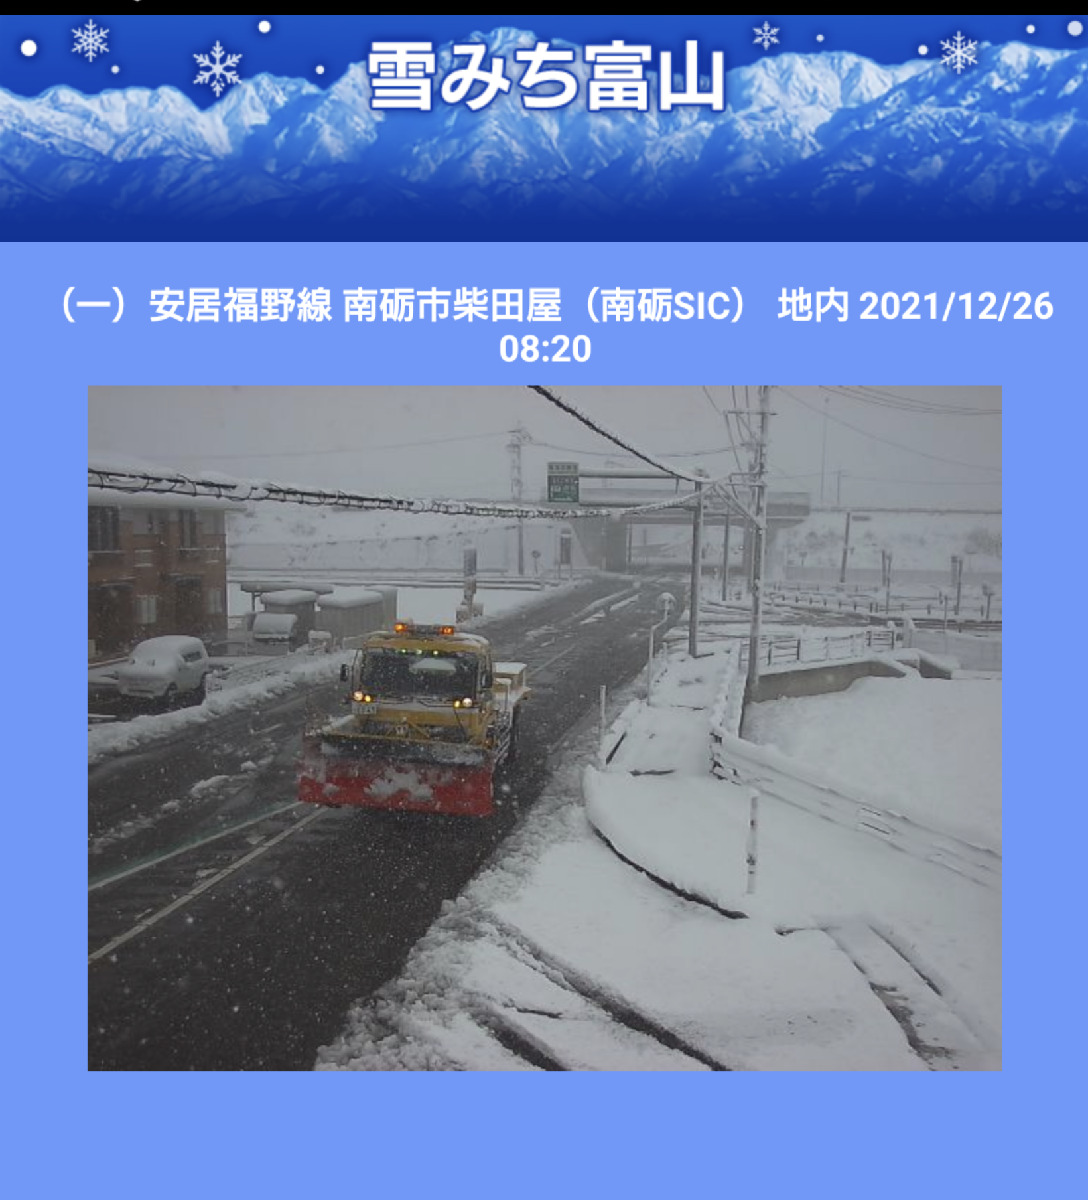 雪みち富山カメラ情報アイコンから